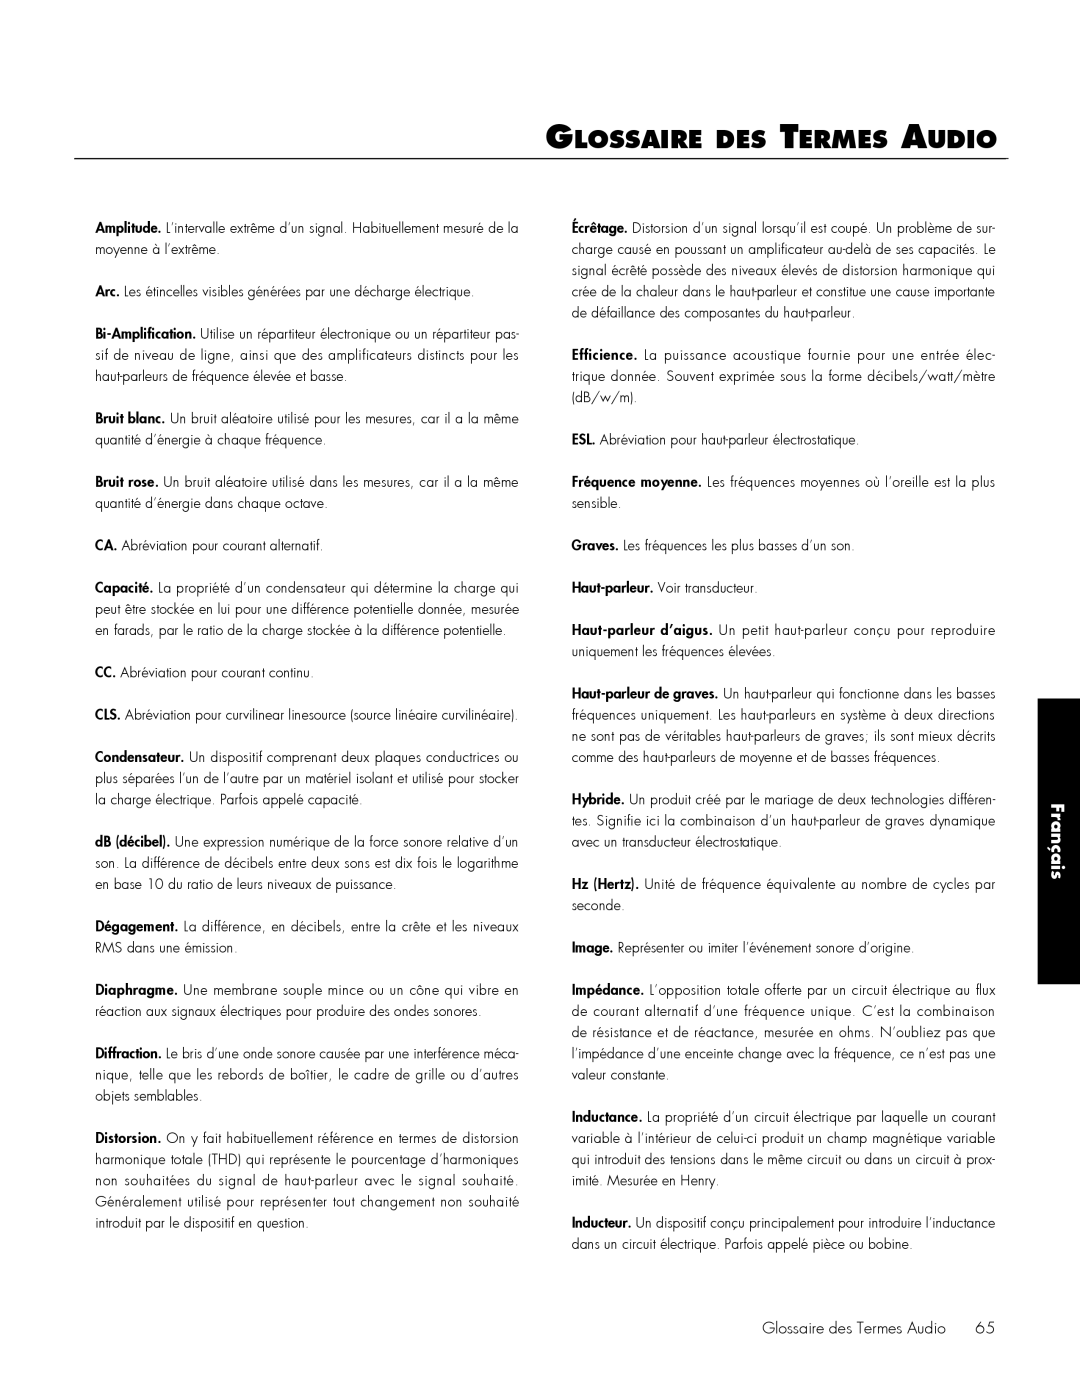 MartinLogan 212, 210 user manual Glossaire des Termes Audio, Français 